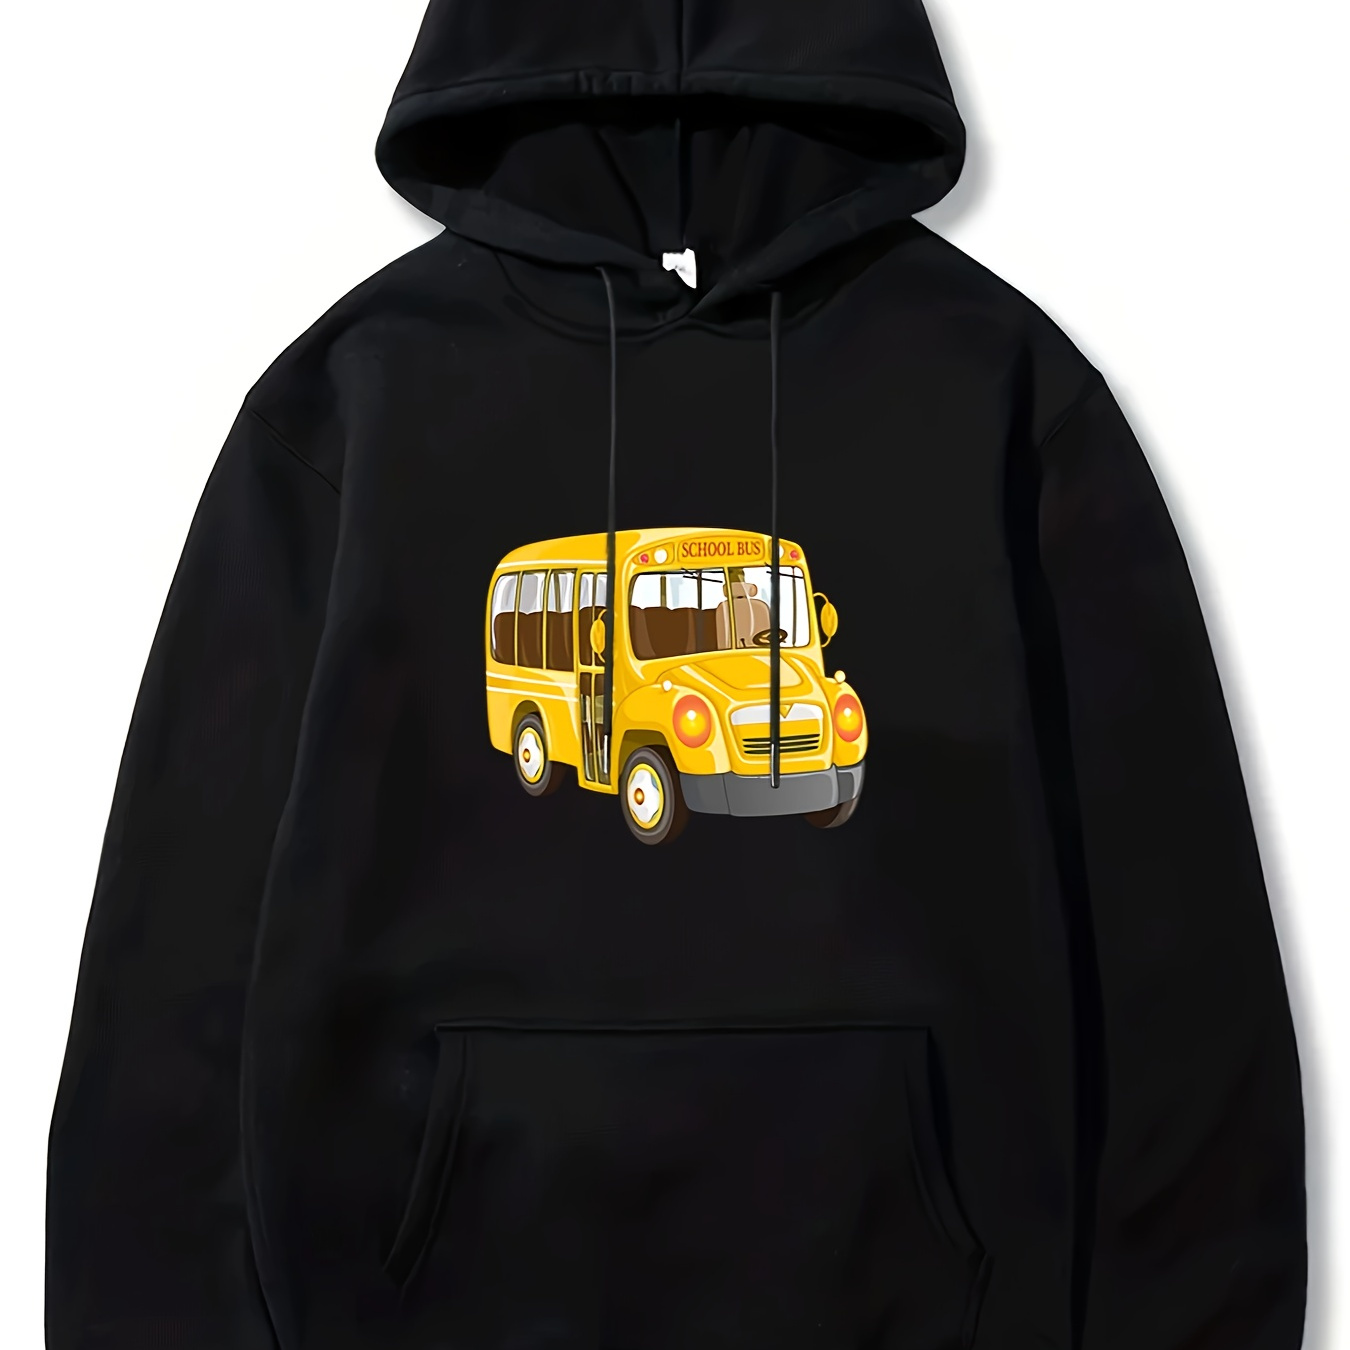 

School Bus Pattern Men's Casual Long Sleeve Hooded Sweatshirt, Fall Winter